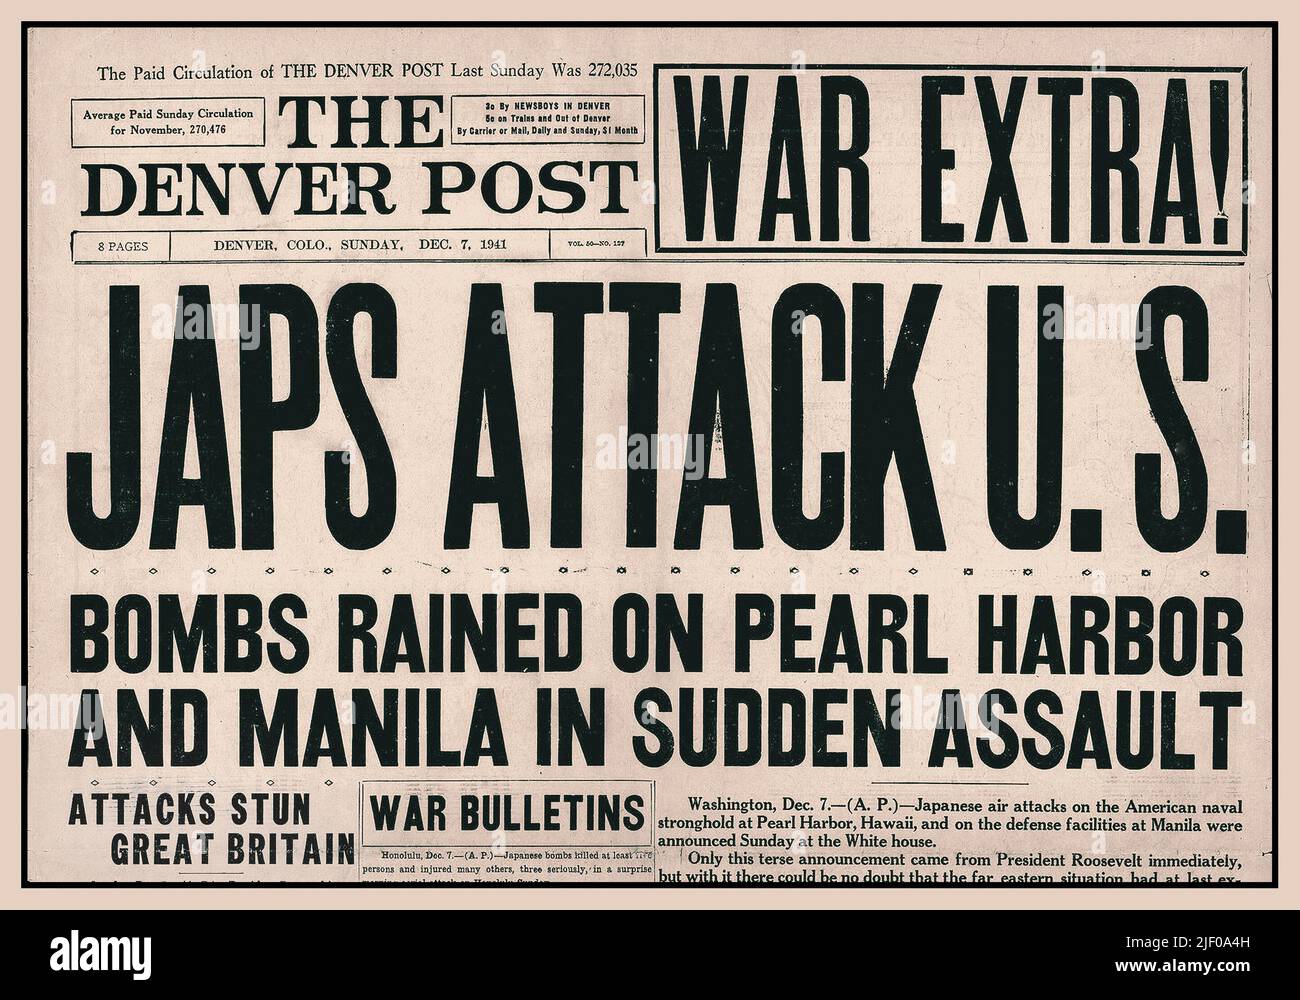 PEARL HARBOR, diciembre de 7th 1941, titular del periódico 'War Extra! JAPS ATAQUE EE.UU. Bombas llovió en Pearl Harbor y Manila en asalto repentino' el Denver Post Front Page 'Splash' titular que trajo a América en la Segunda Guerra Mundial WW2 Foto de stock